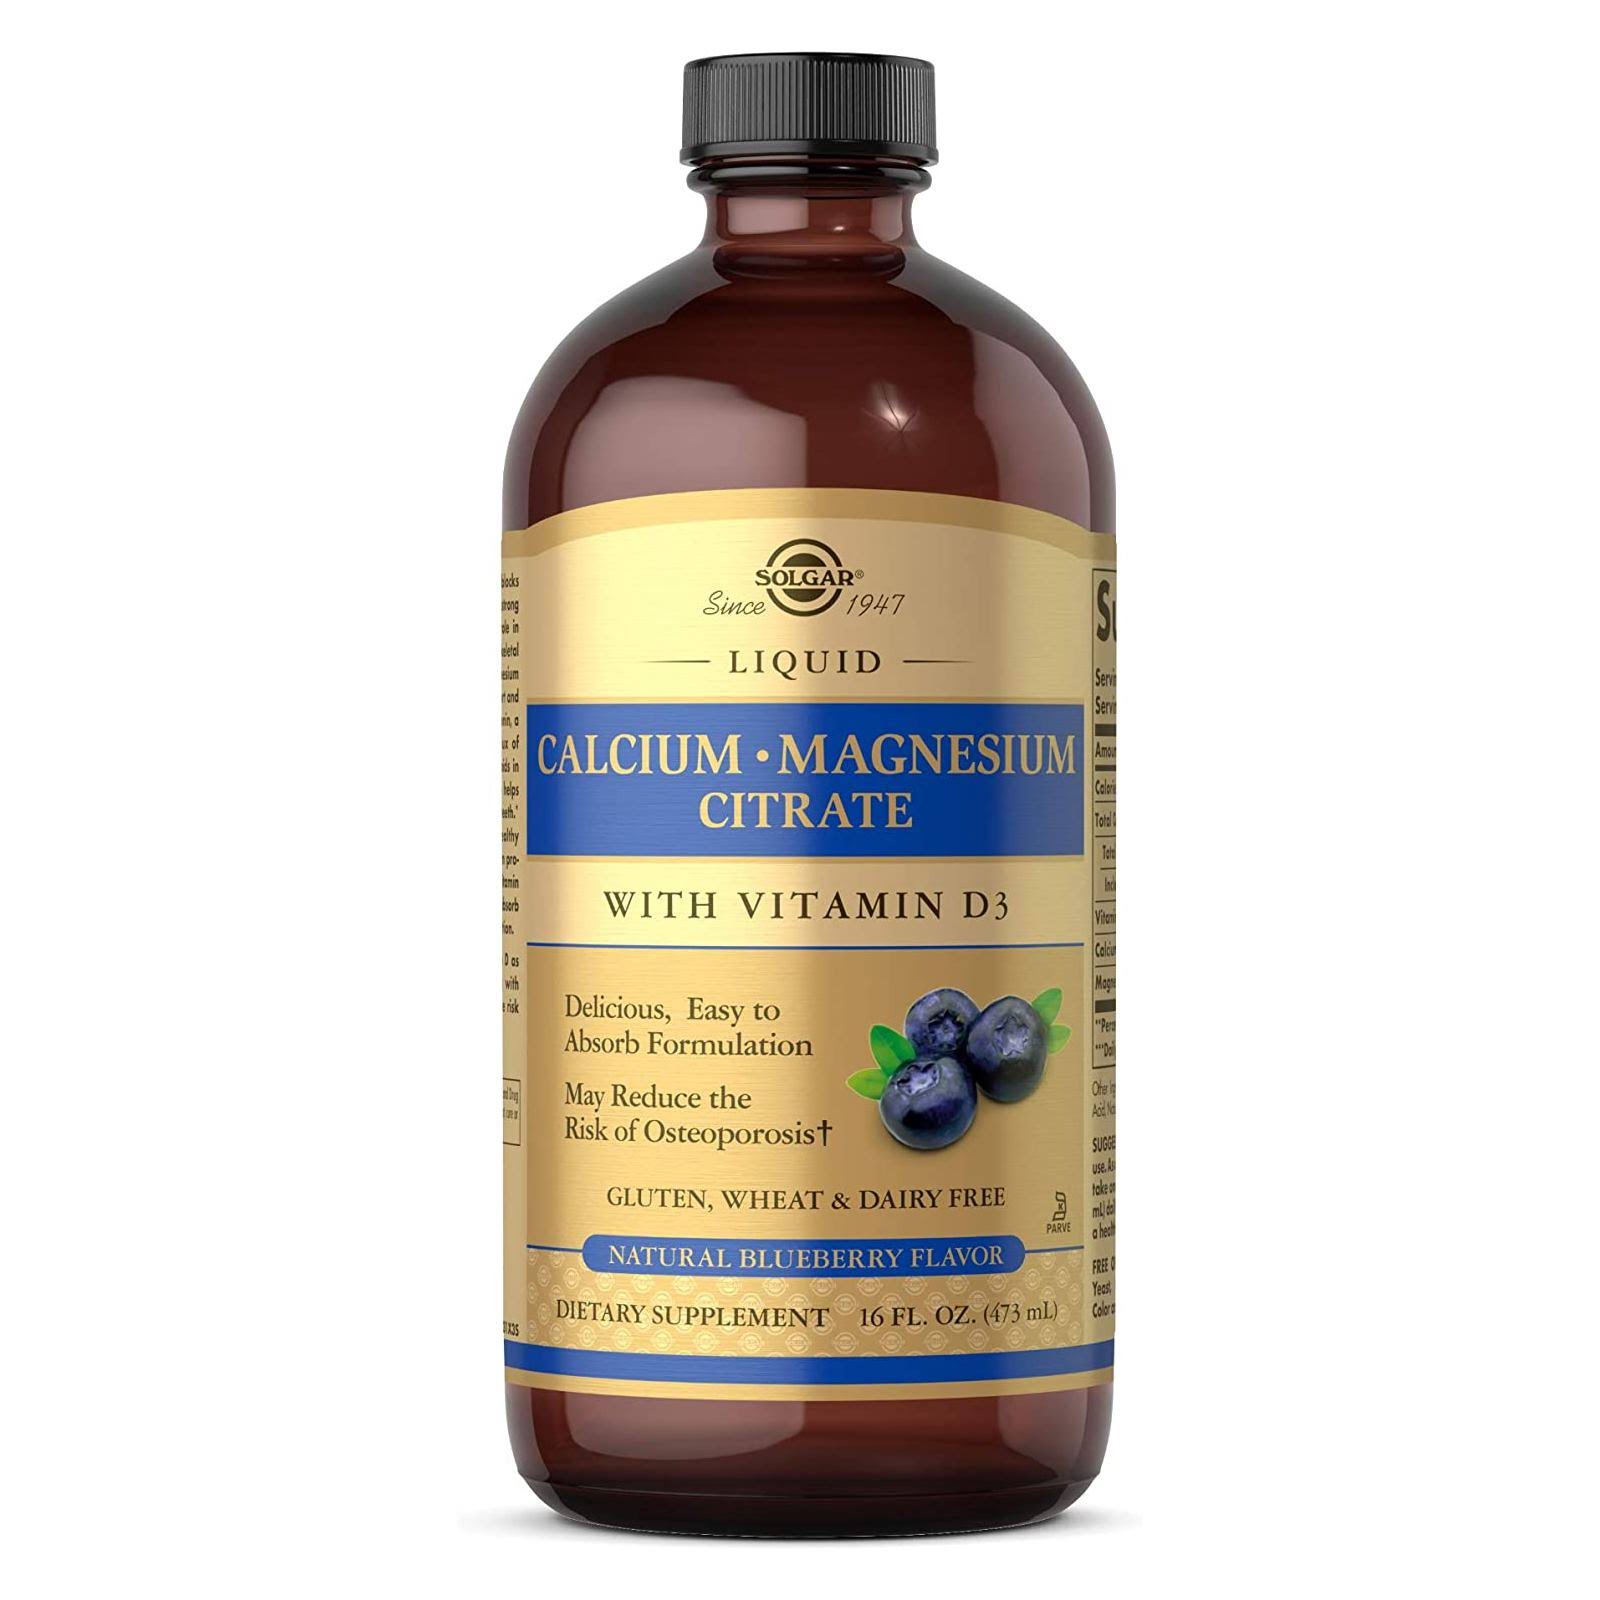 Solgar Calcium Magnesium Citrate Liquid with Vitamin D3 - Natural Blueberry, 16 fl oz